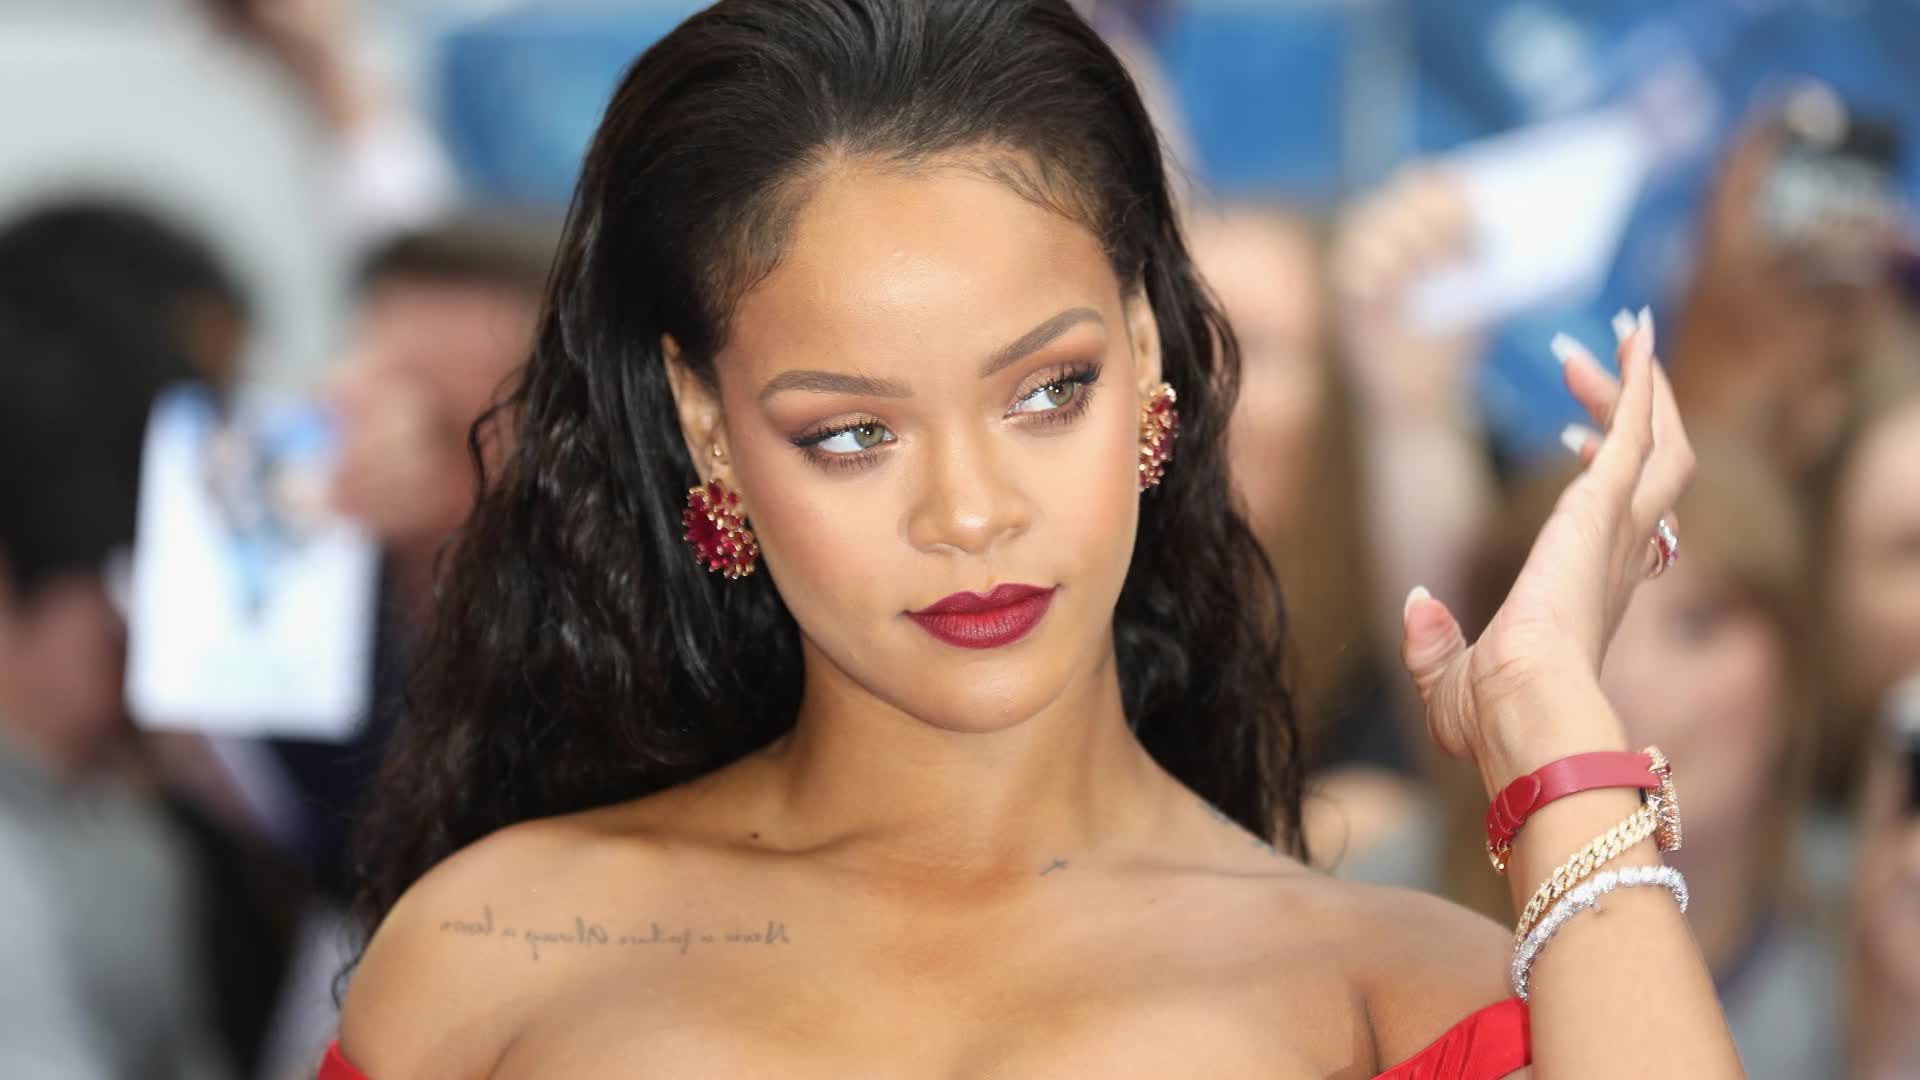 erwt keuken scheuren Rihanna is world's wealthiest female musician, Forbes says | CNN